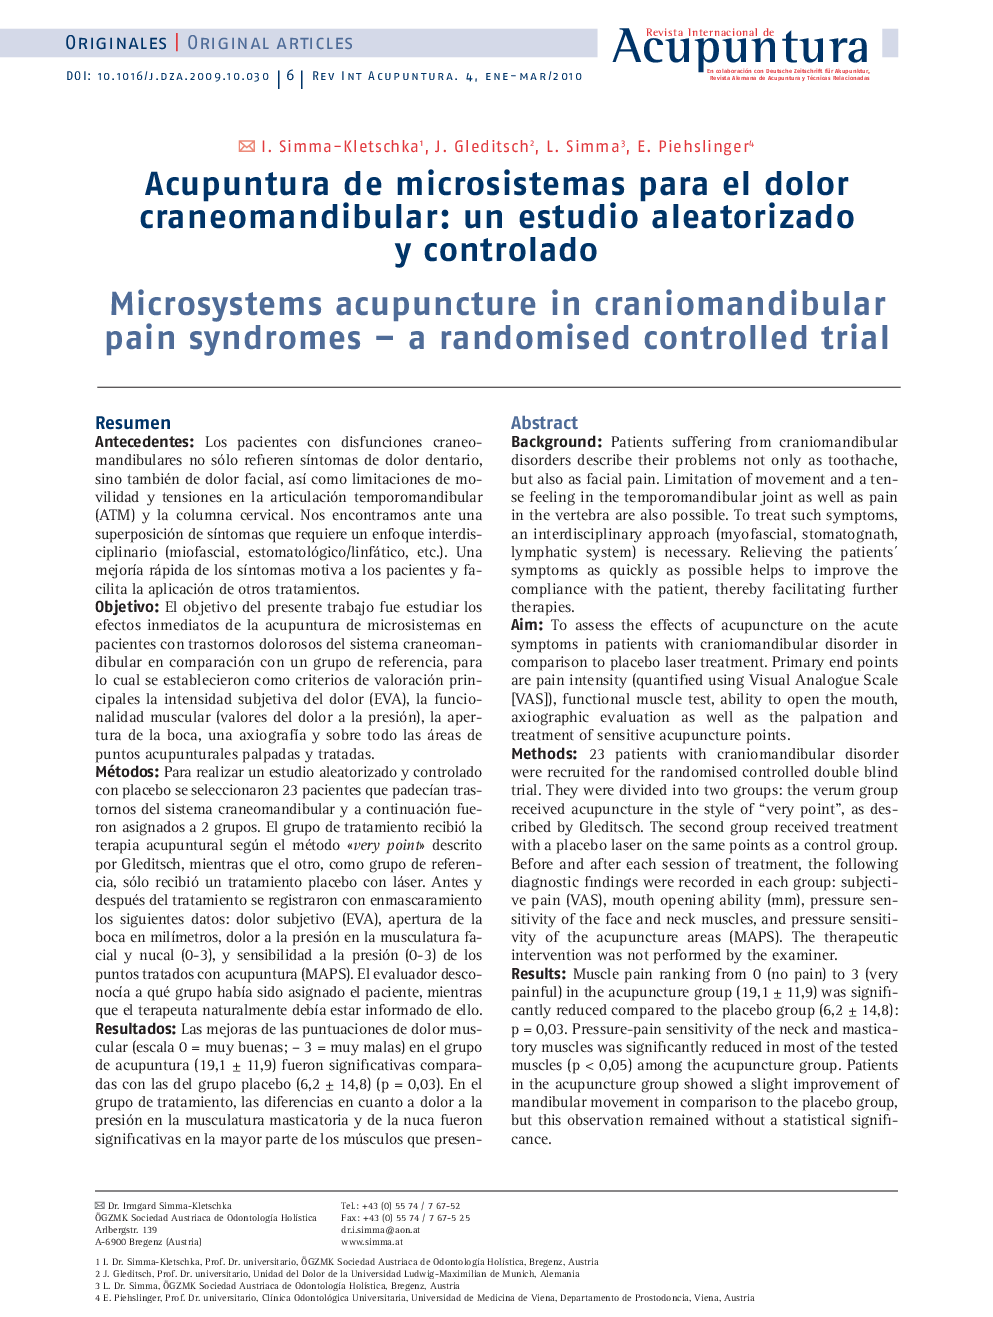 Acupuntura de microsistemas para el dolor craneomandibular: un estudio aleatorizado y controlado